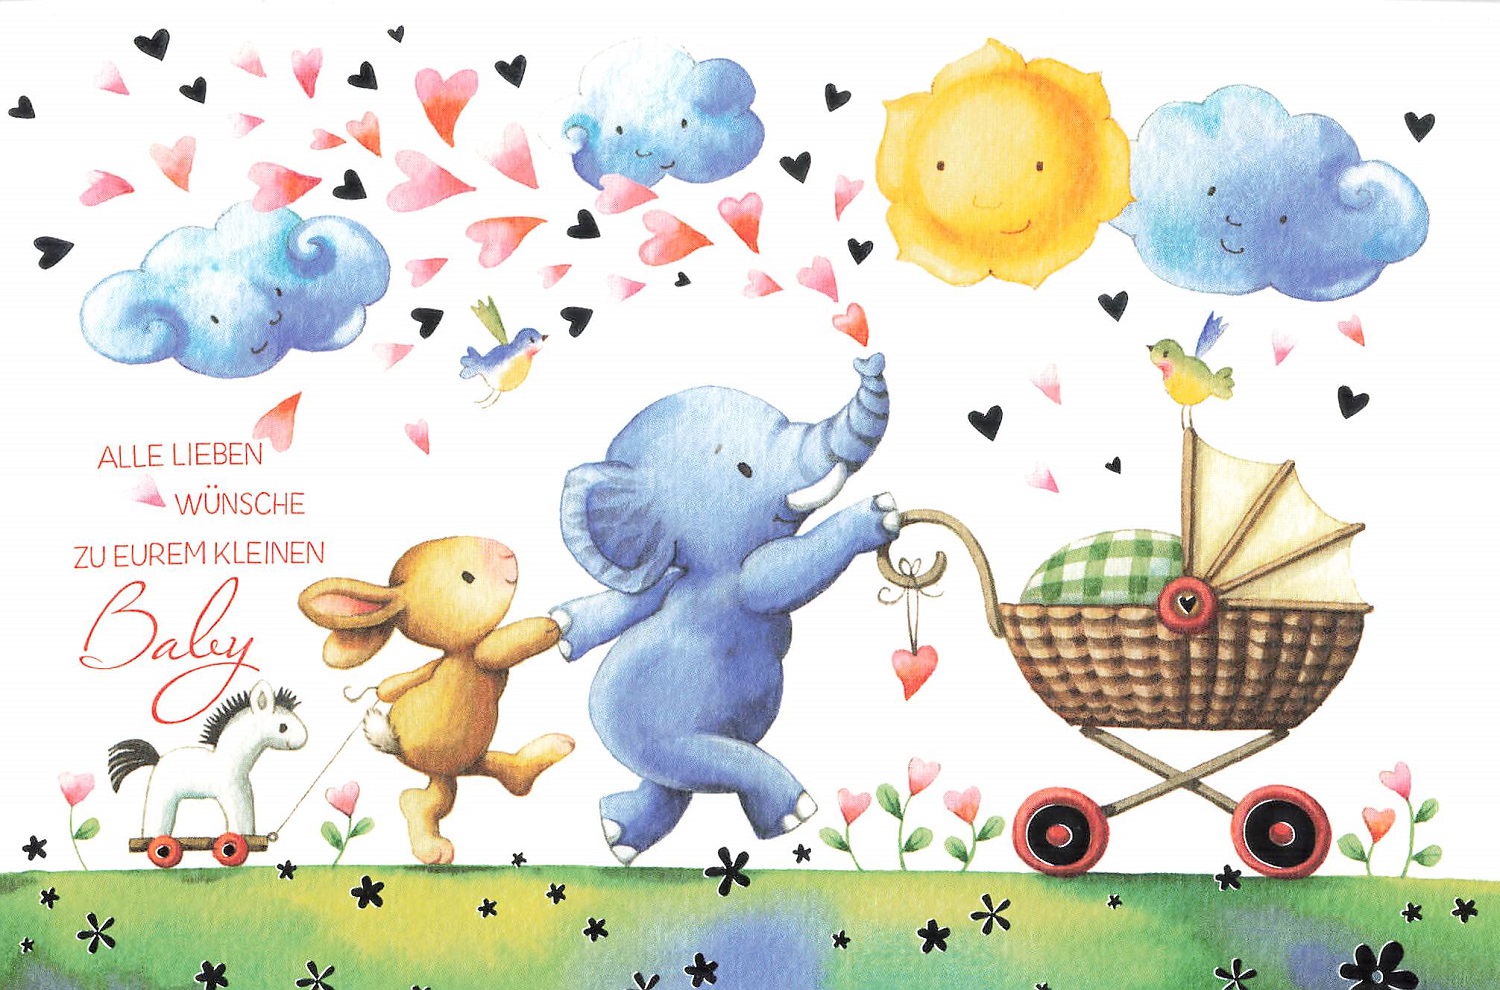 Glückwunschkarte Alle lieben Wünsche mit Elefant